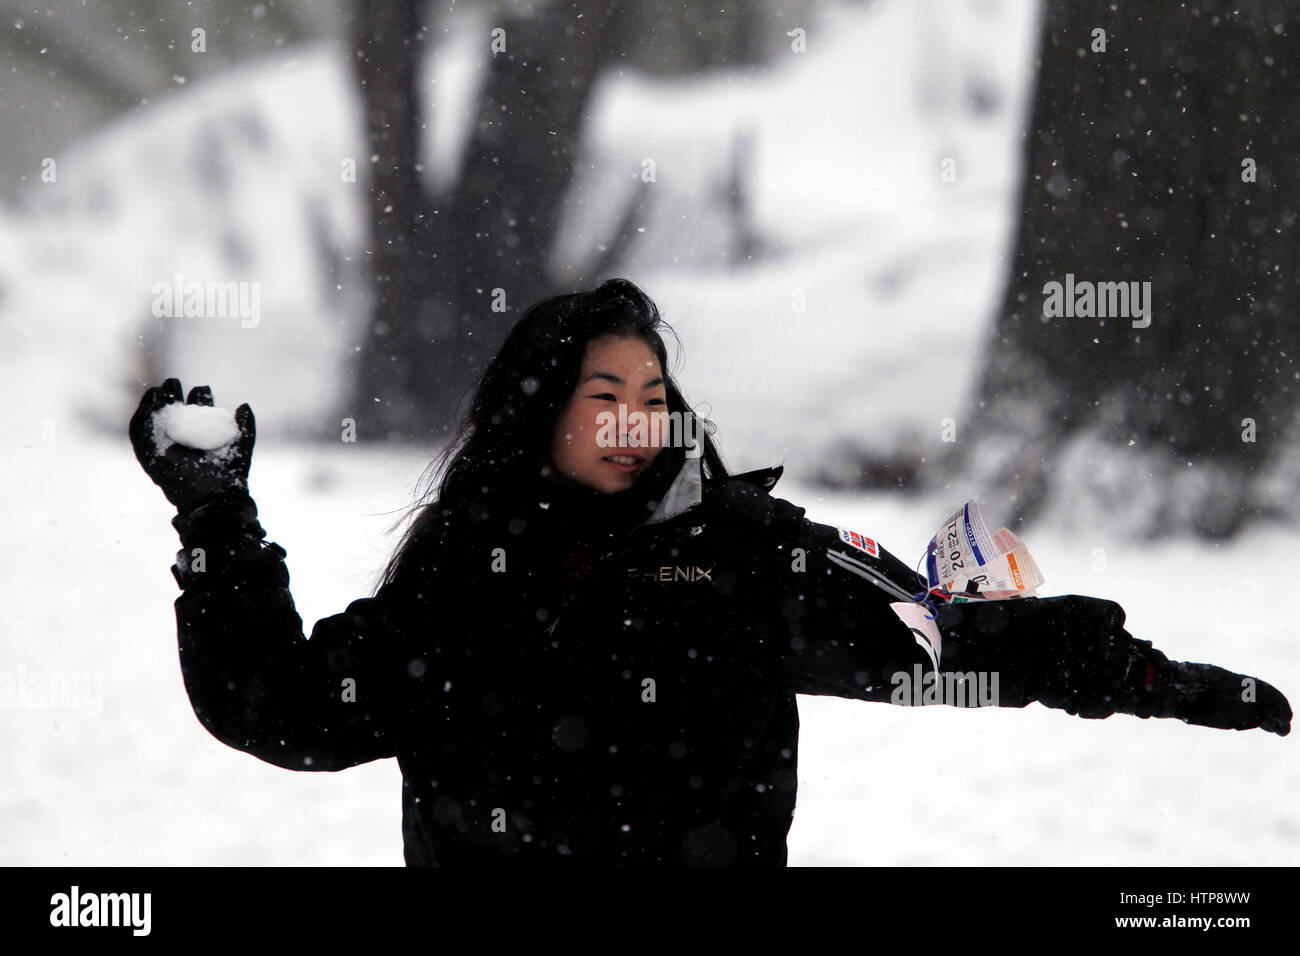 Nueva York, Estados Unidos. 14 Mar, 2017. Una mujer lanza una bola de nieve a su compañero en el Central Park de Nueva York durante una tormenta el 14 de marzo de 2017, la cual fue predicha para traer tanto como dos pies de nieve a la ciudad, pero sólo trajo de 7 pulgadas. El cierre de escuelas y la ciudad fue relativamente tranquilo, ya que muchos se quedaron en casa, pero algunos se aventuraron a divertirse en el parque. Crédito: Adam Stoltman/Alamy Live News Foto de stock